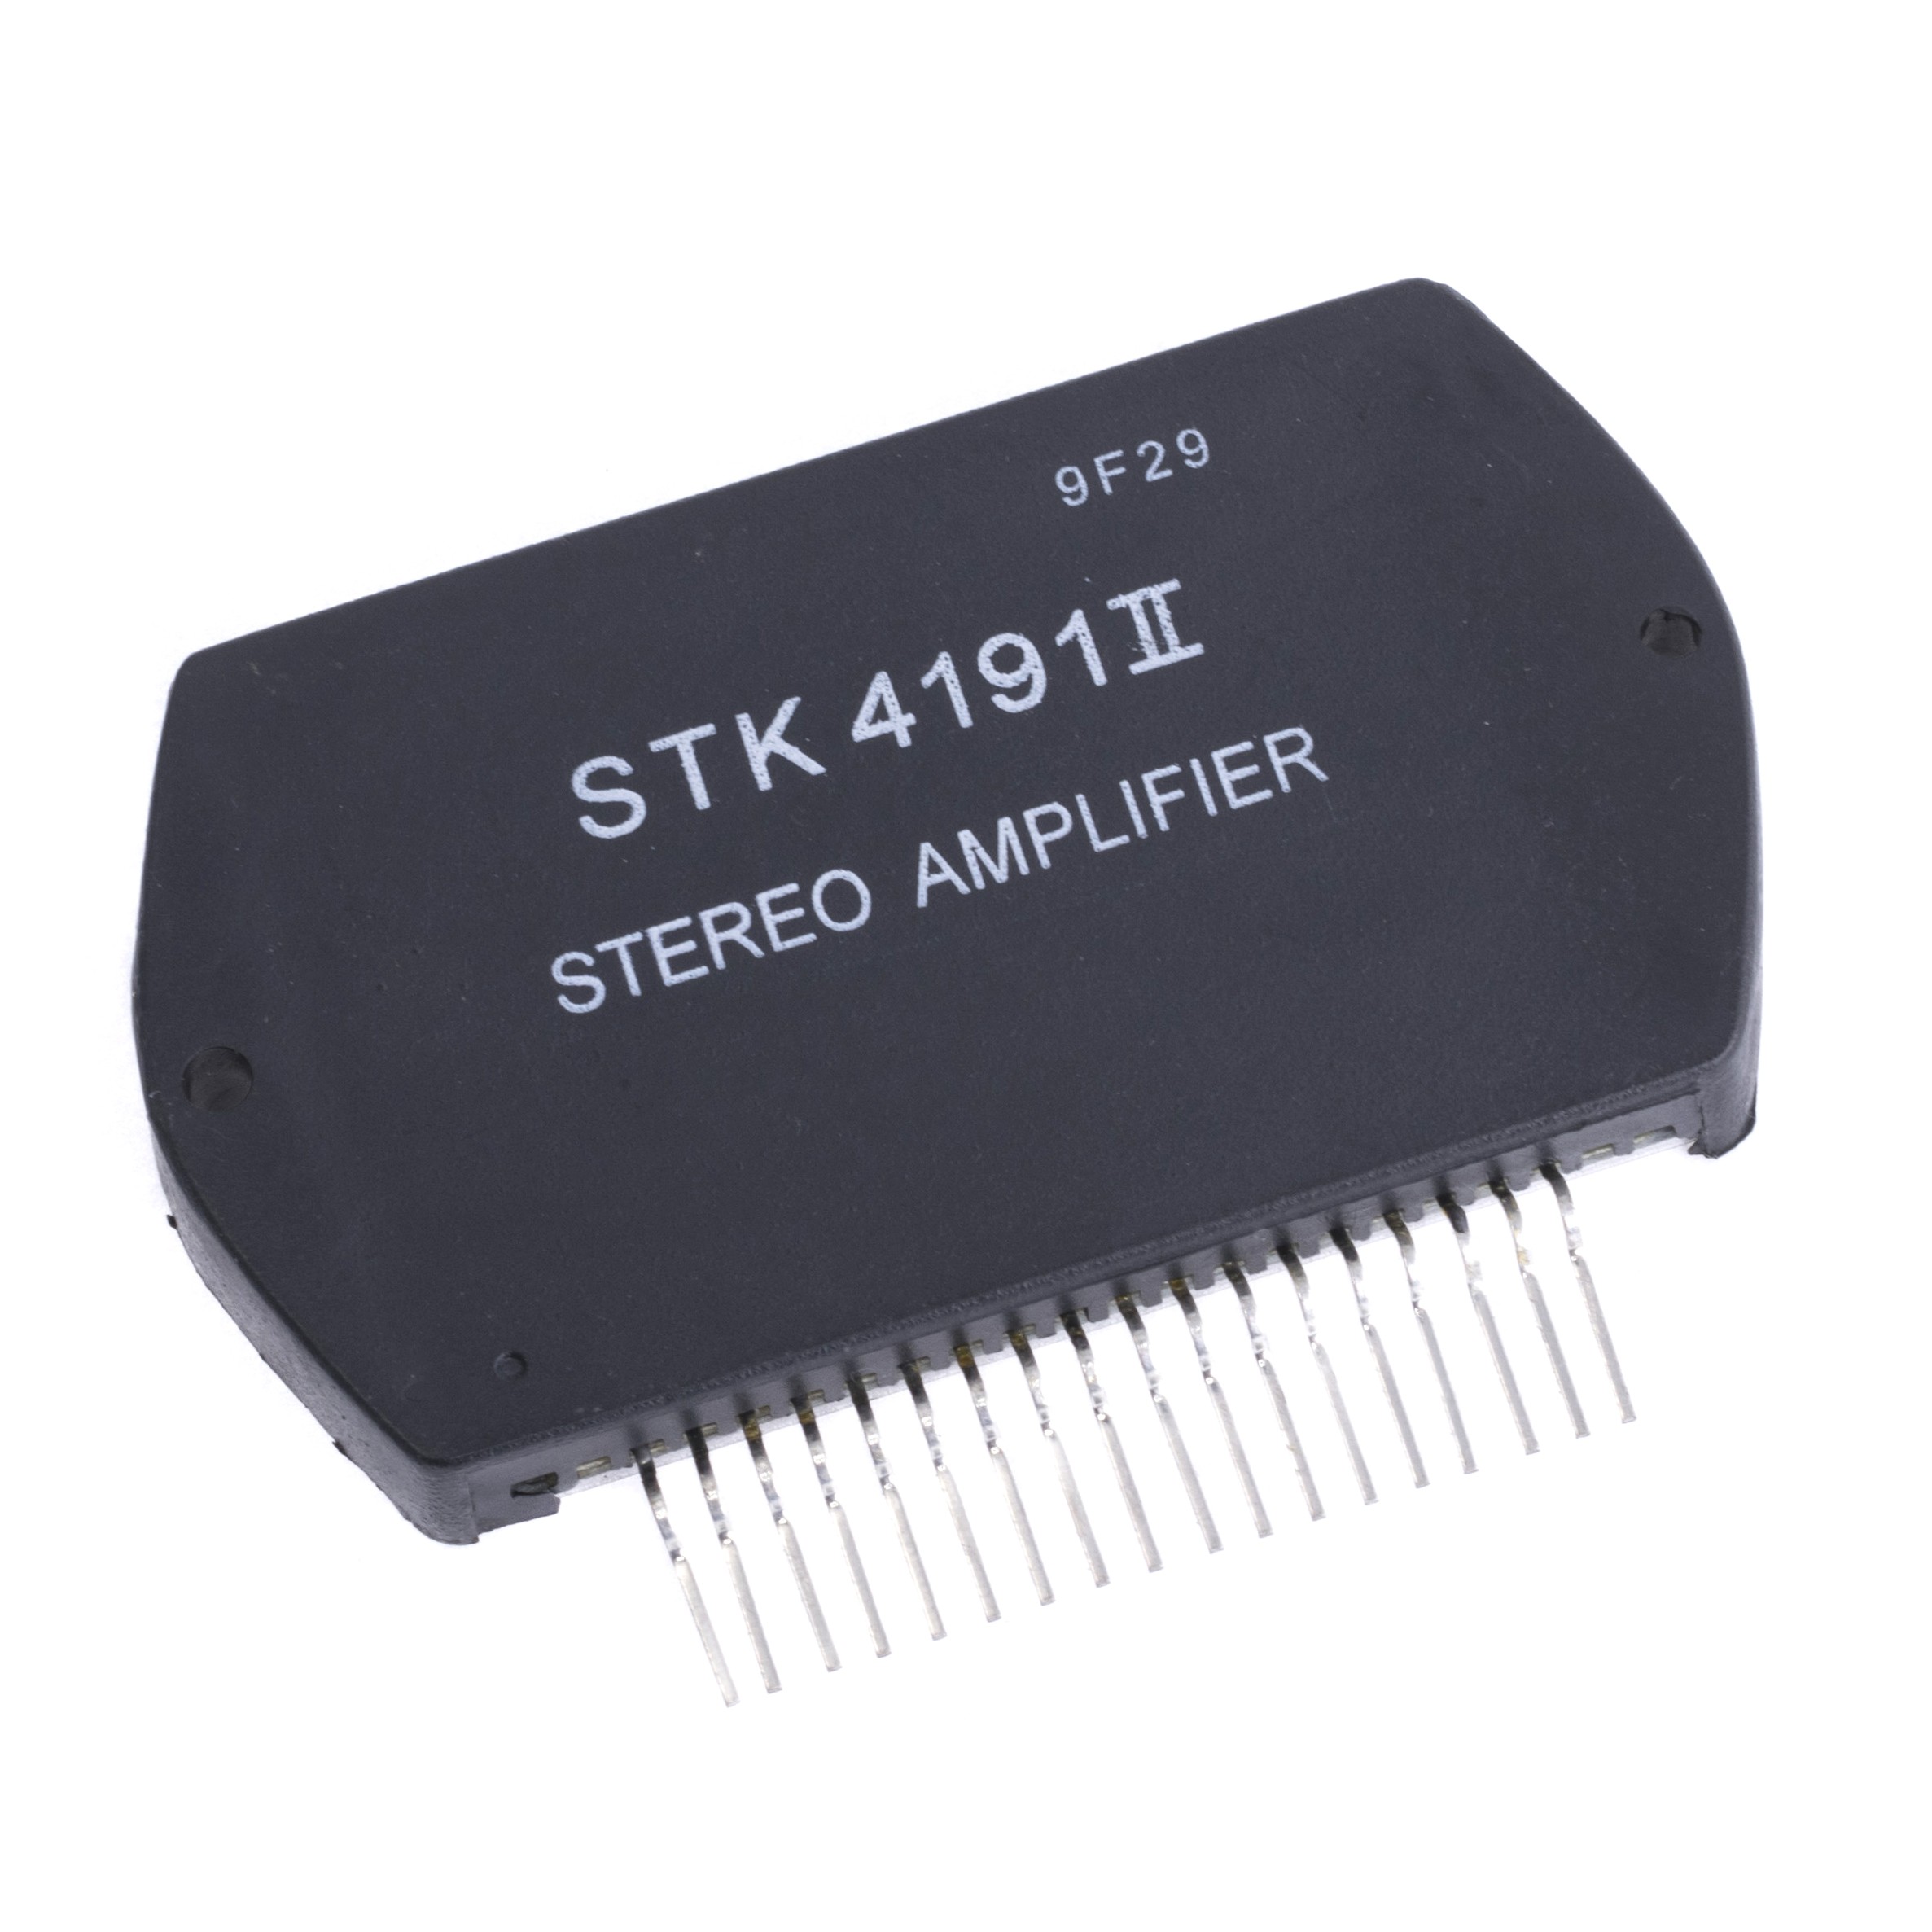 STK4191-II